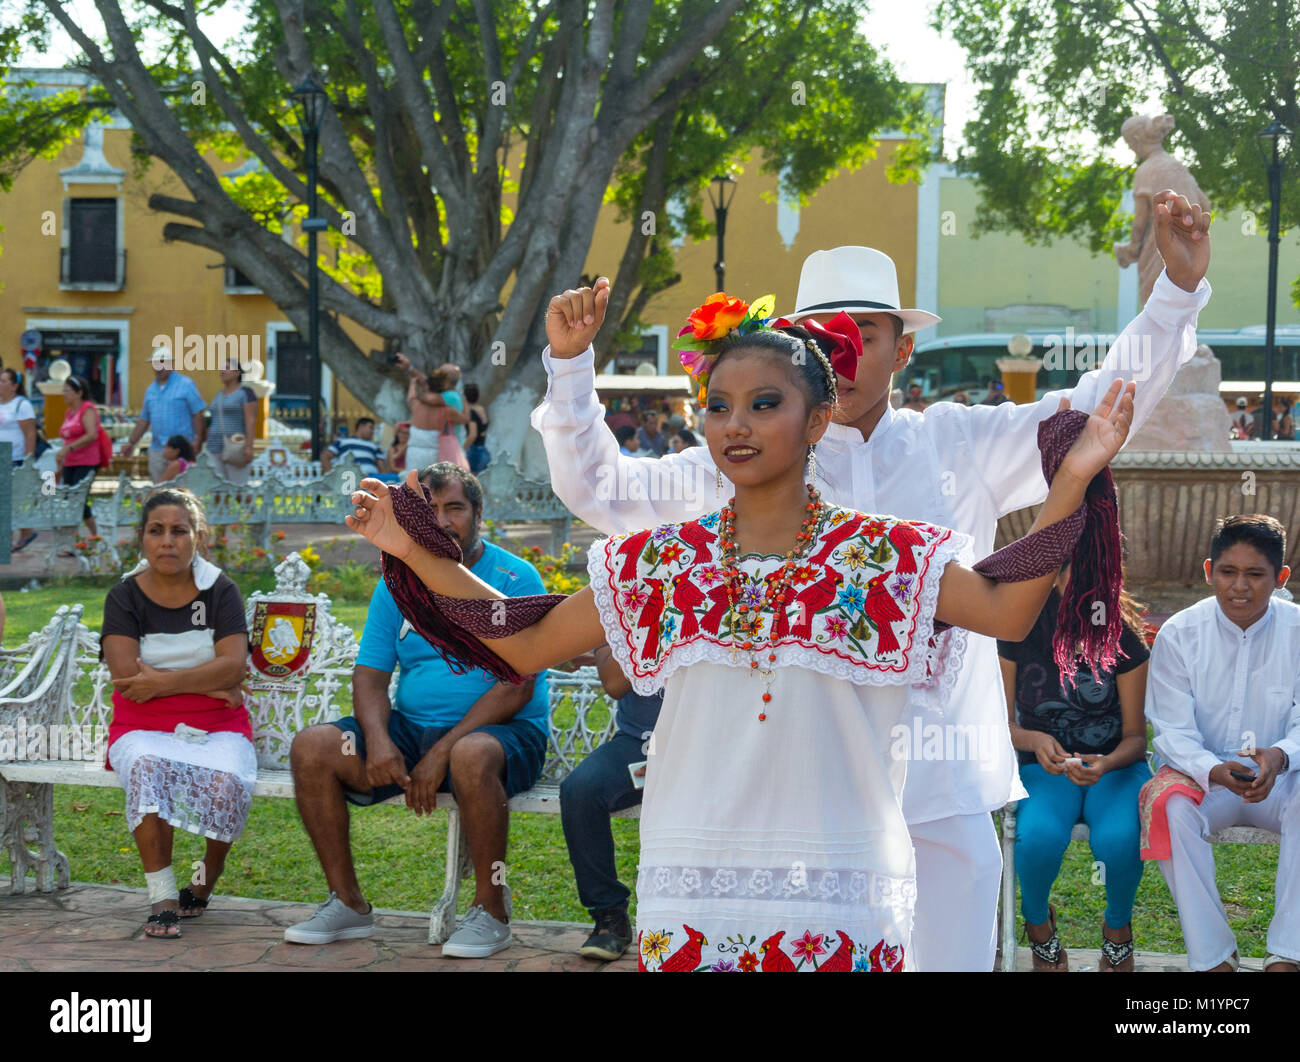 Valladolid, Yucatan, Mexique, danseurs mexicains au Parque principal Francisco Cantón Rosado qui est un parc principal de Valladolid Banque D'Images